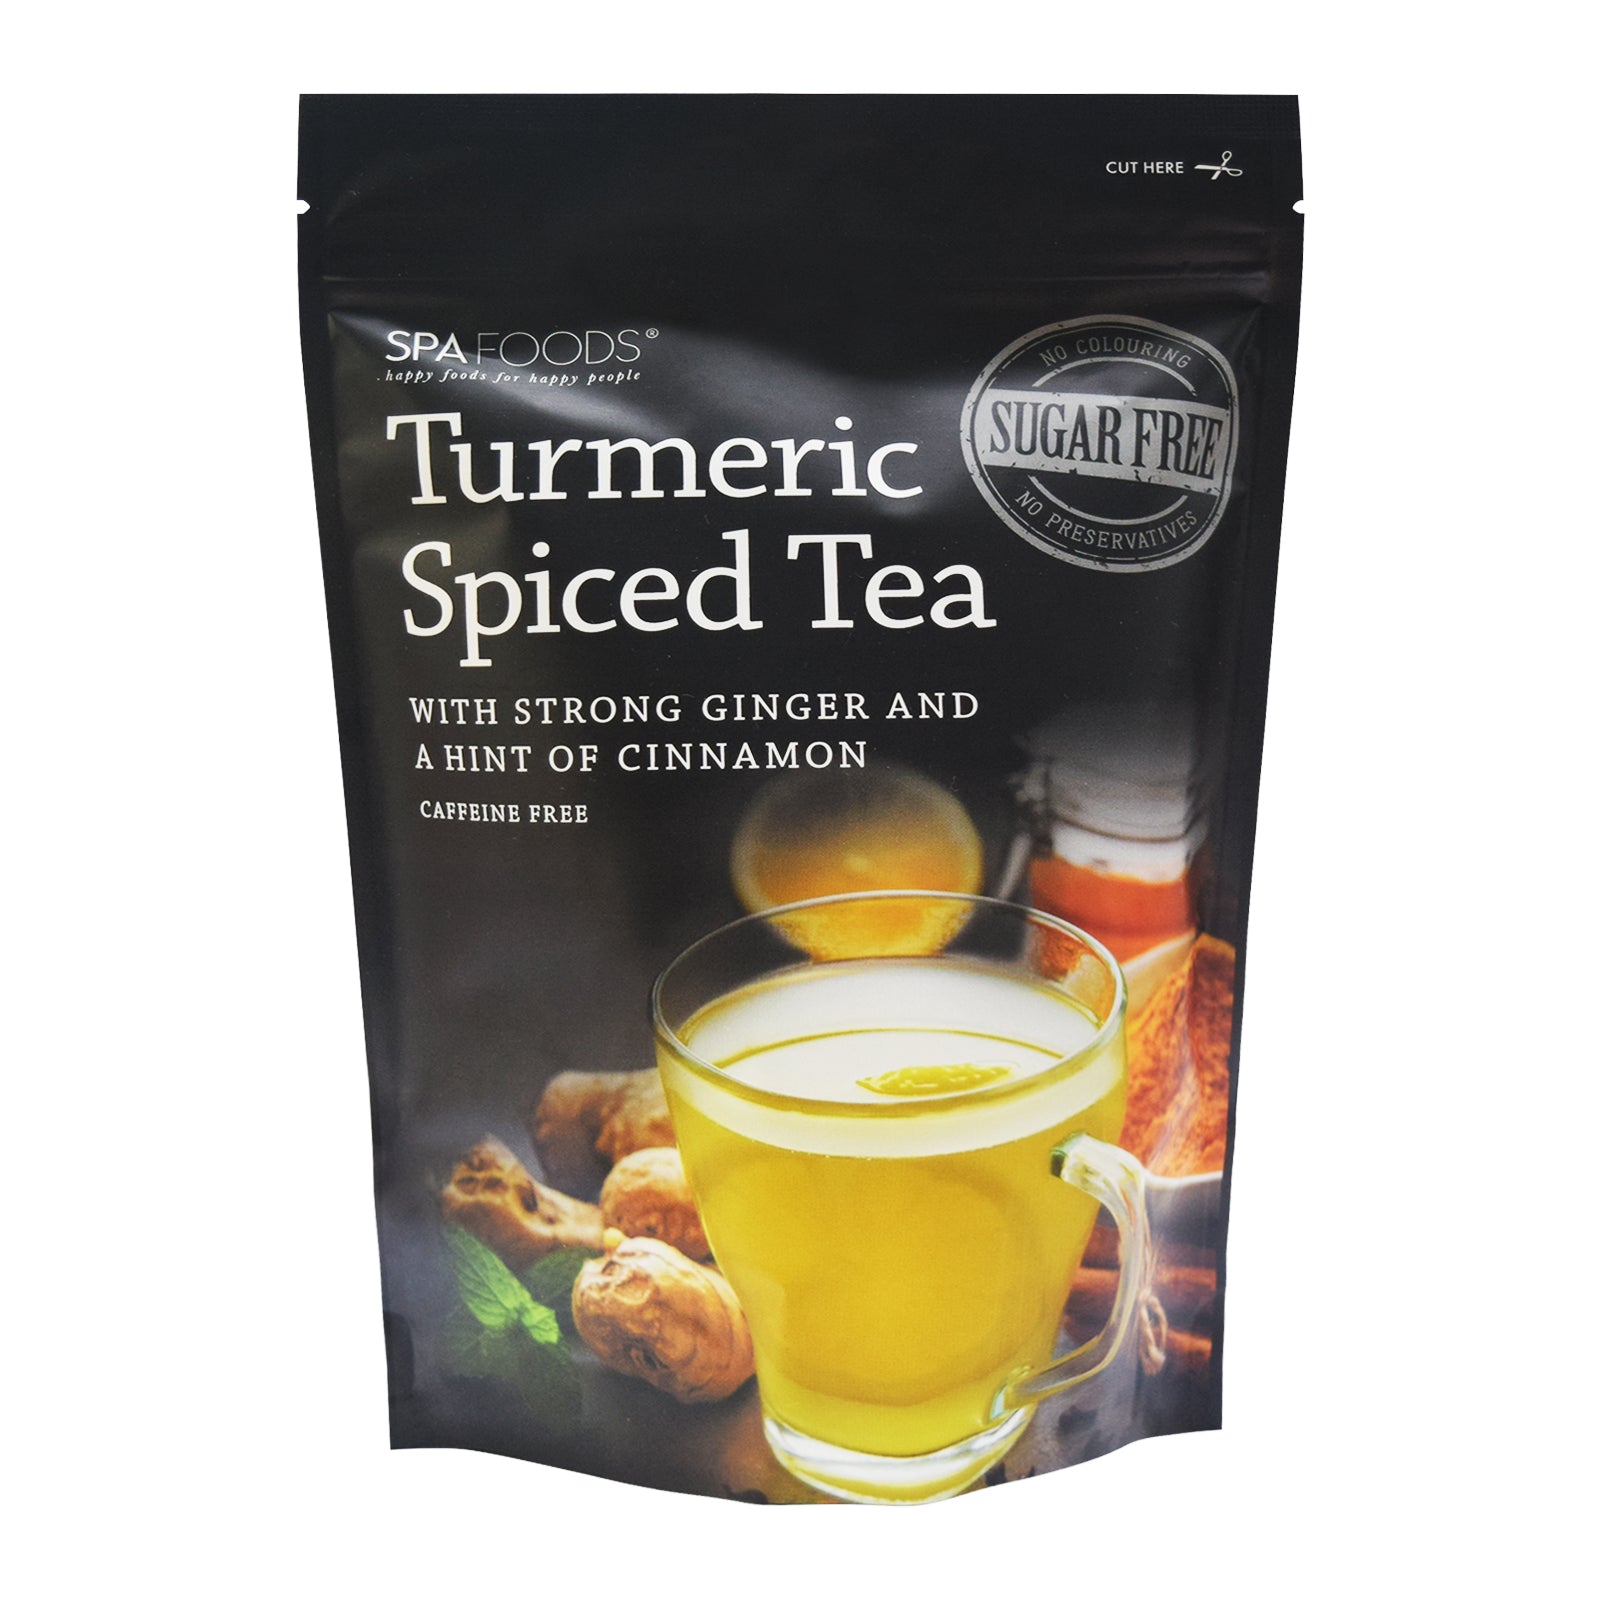 Turmeric Spiced Tea